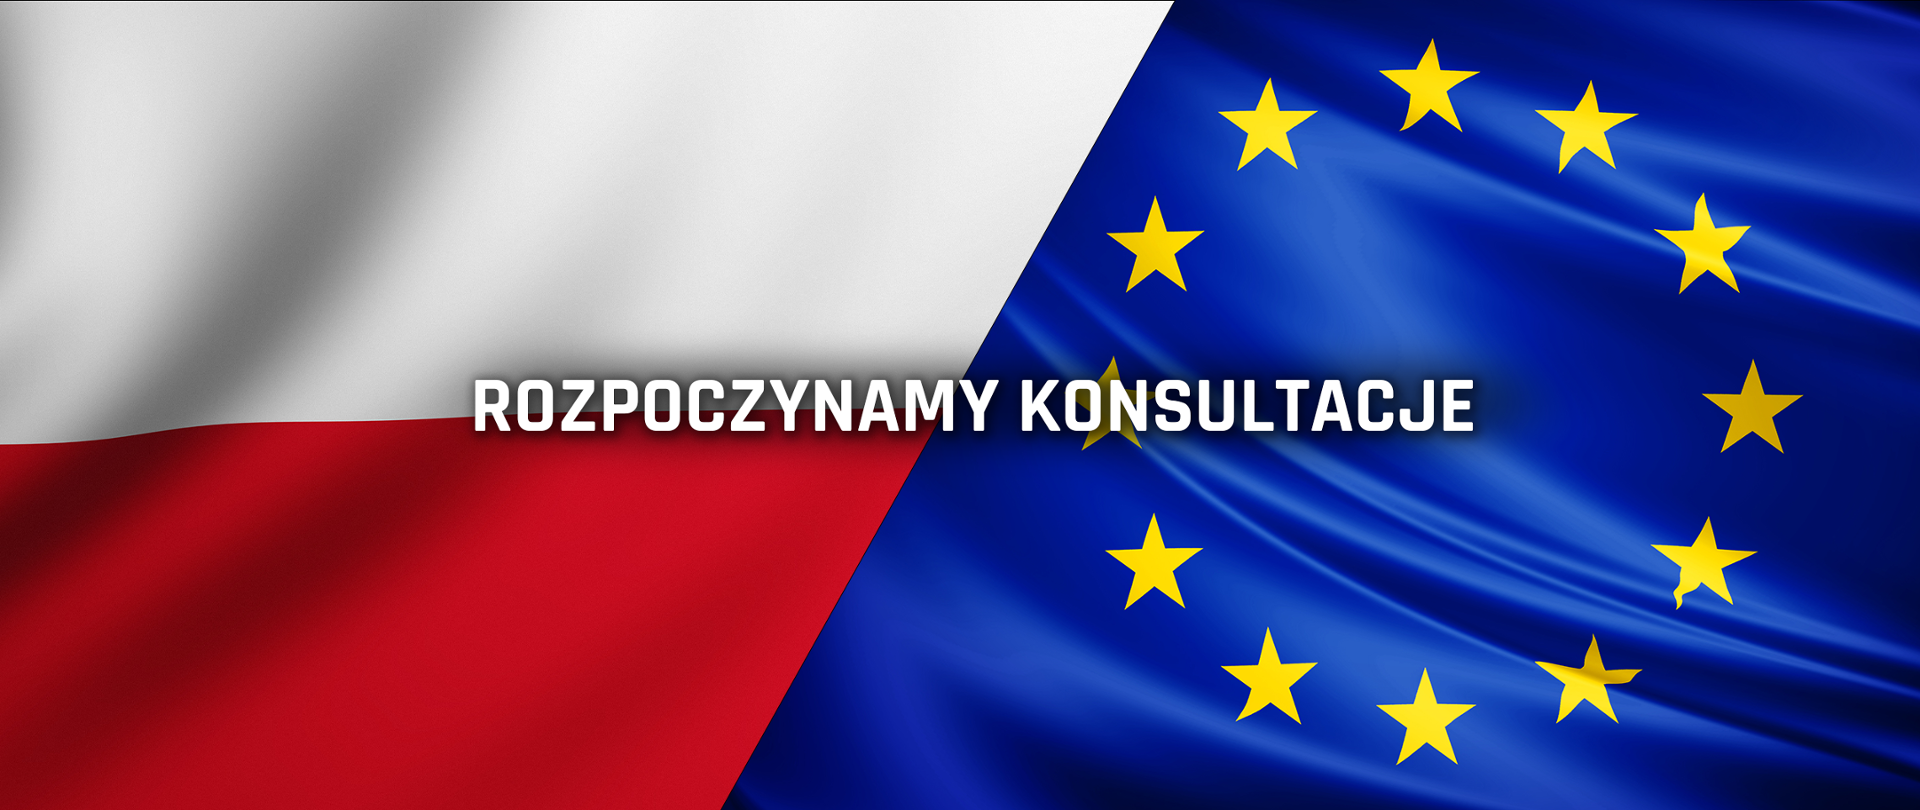 Konsultacje aktu implementującego pierwszego europejskiego programu certyfikacji cyberbezpieczeństwa - EUCC